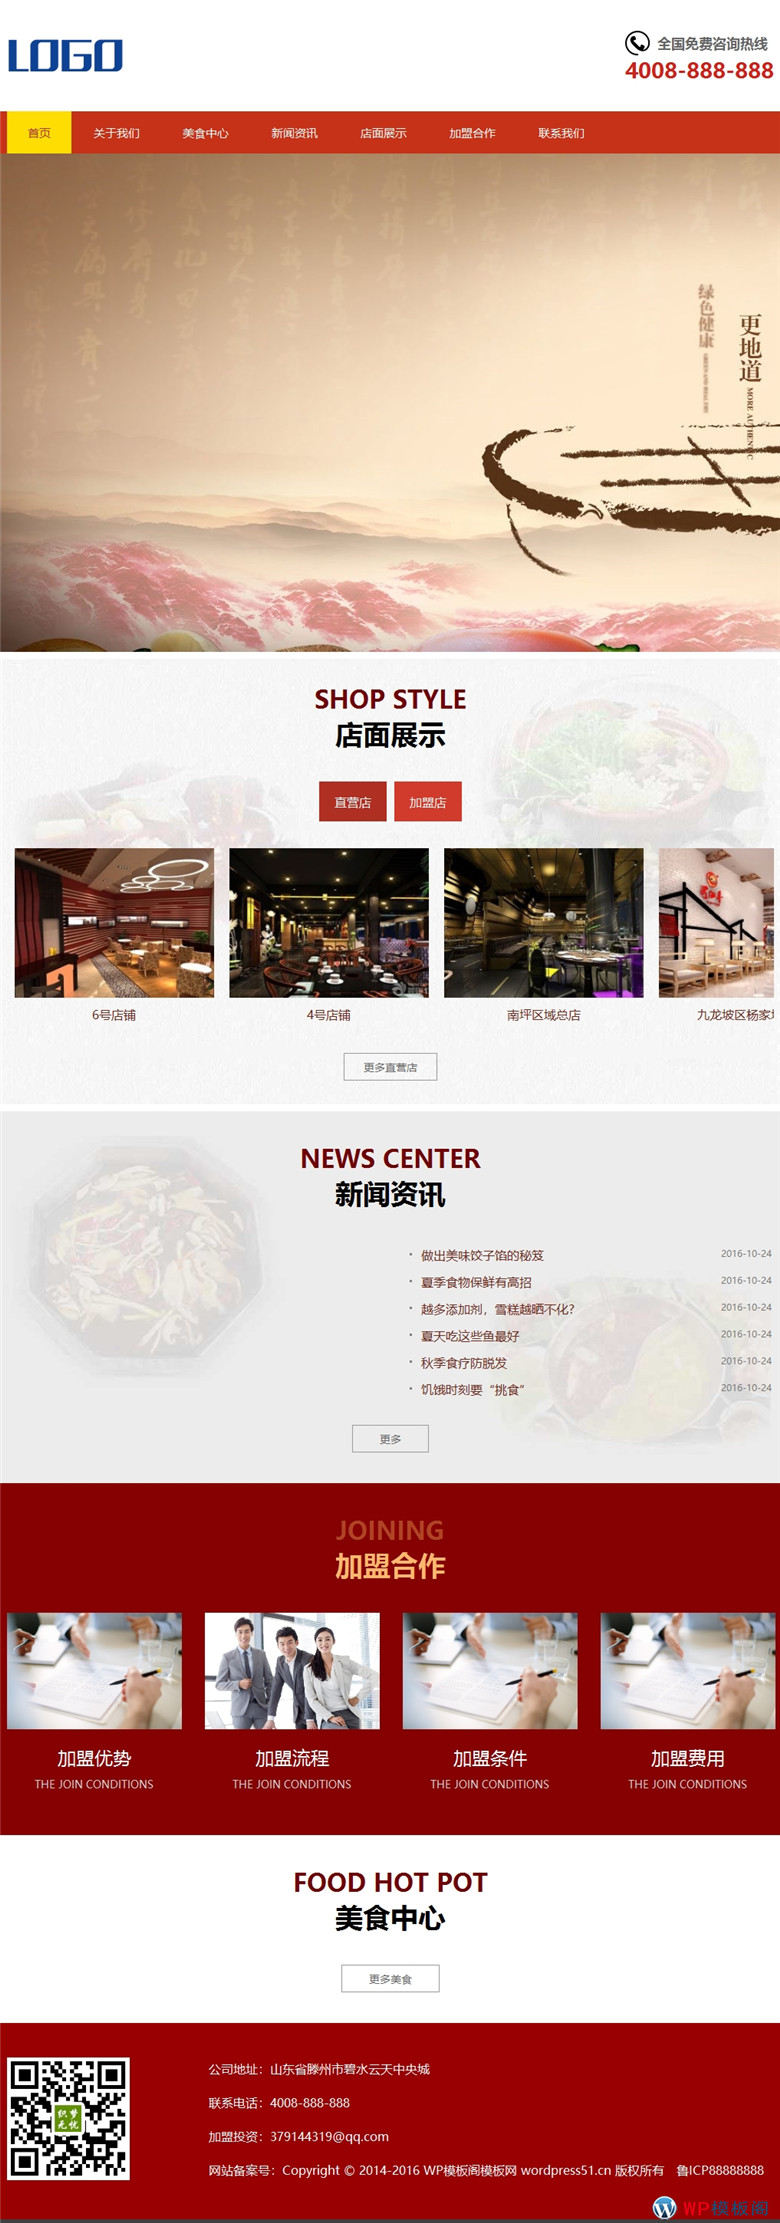 手机鸳鸯火锅html5特色美食店加盟类模网站制作_网站建设模板演示图